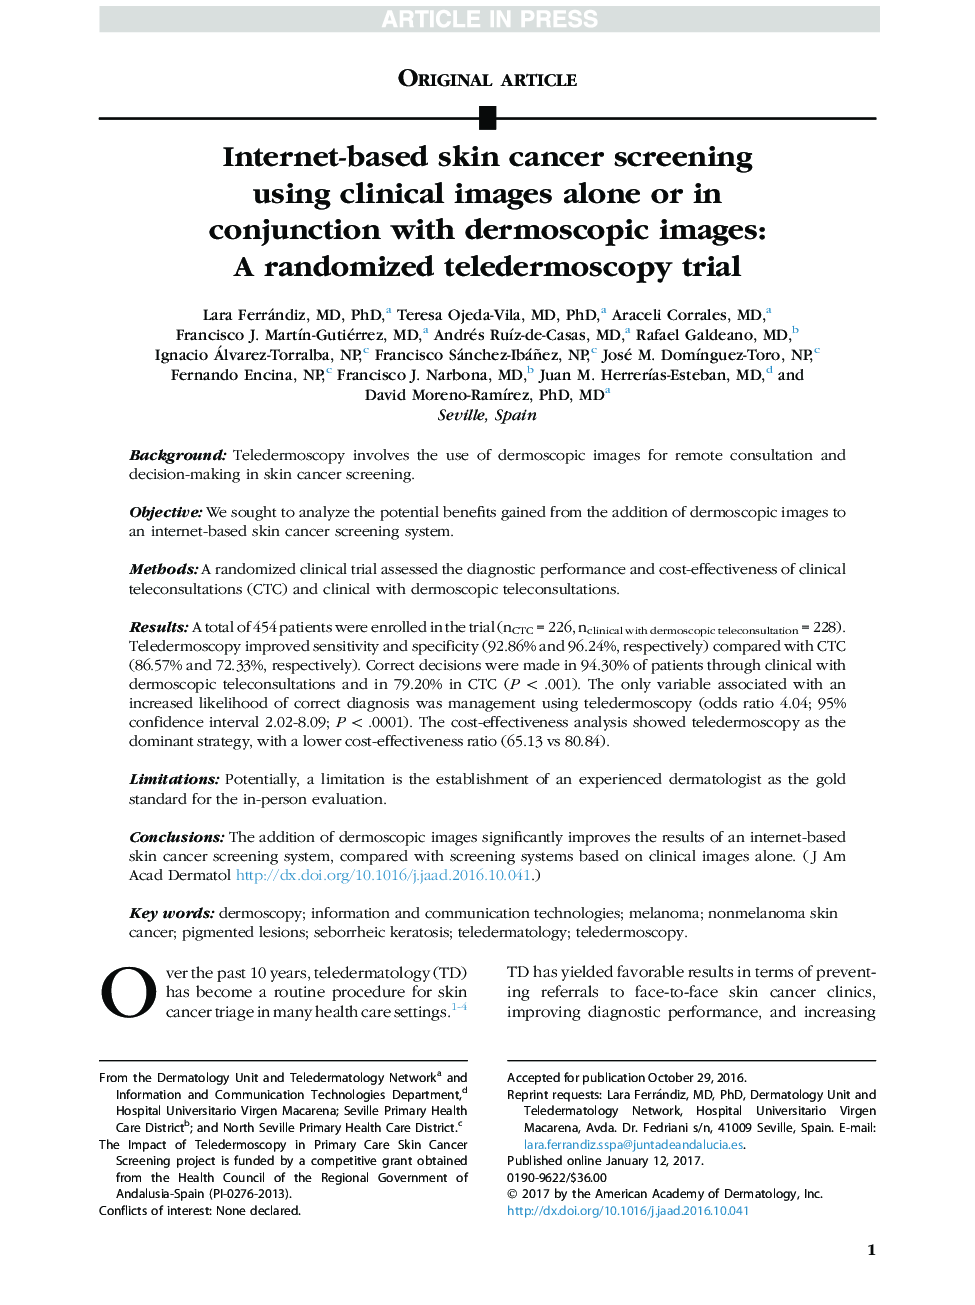 غربالگری سرطان پوست مبتنی بر اینترنت با استفاده از تصاویر بالینی به تنهایی و یا همراه با تصاویر پوستی: یک آزمایش تلدررموسکوپی تصادفی 